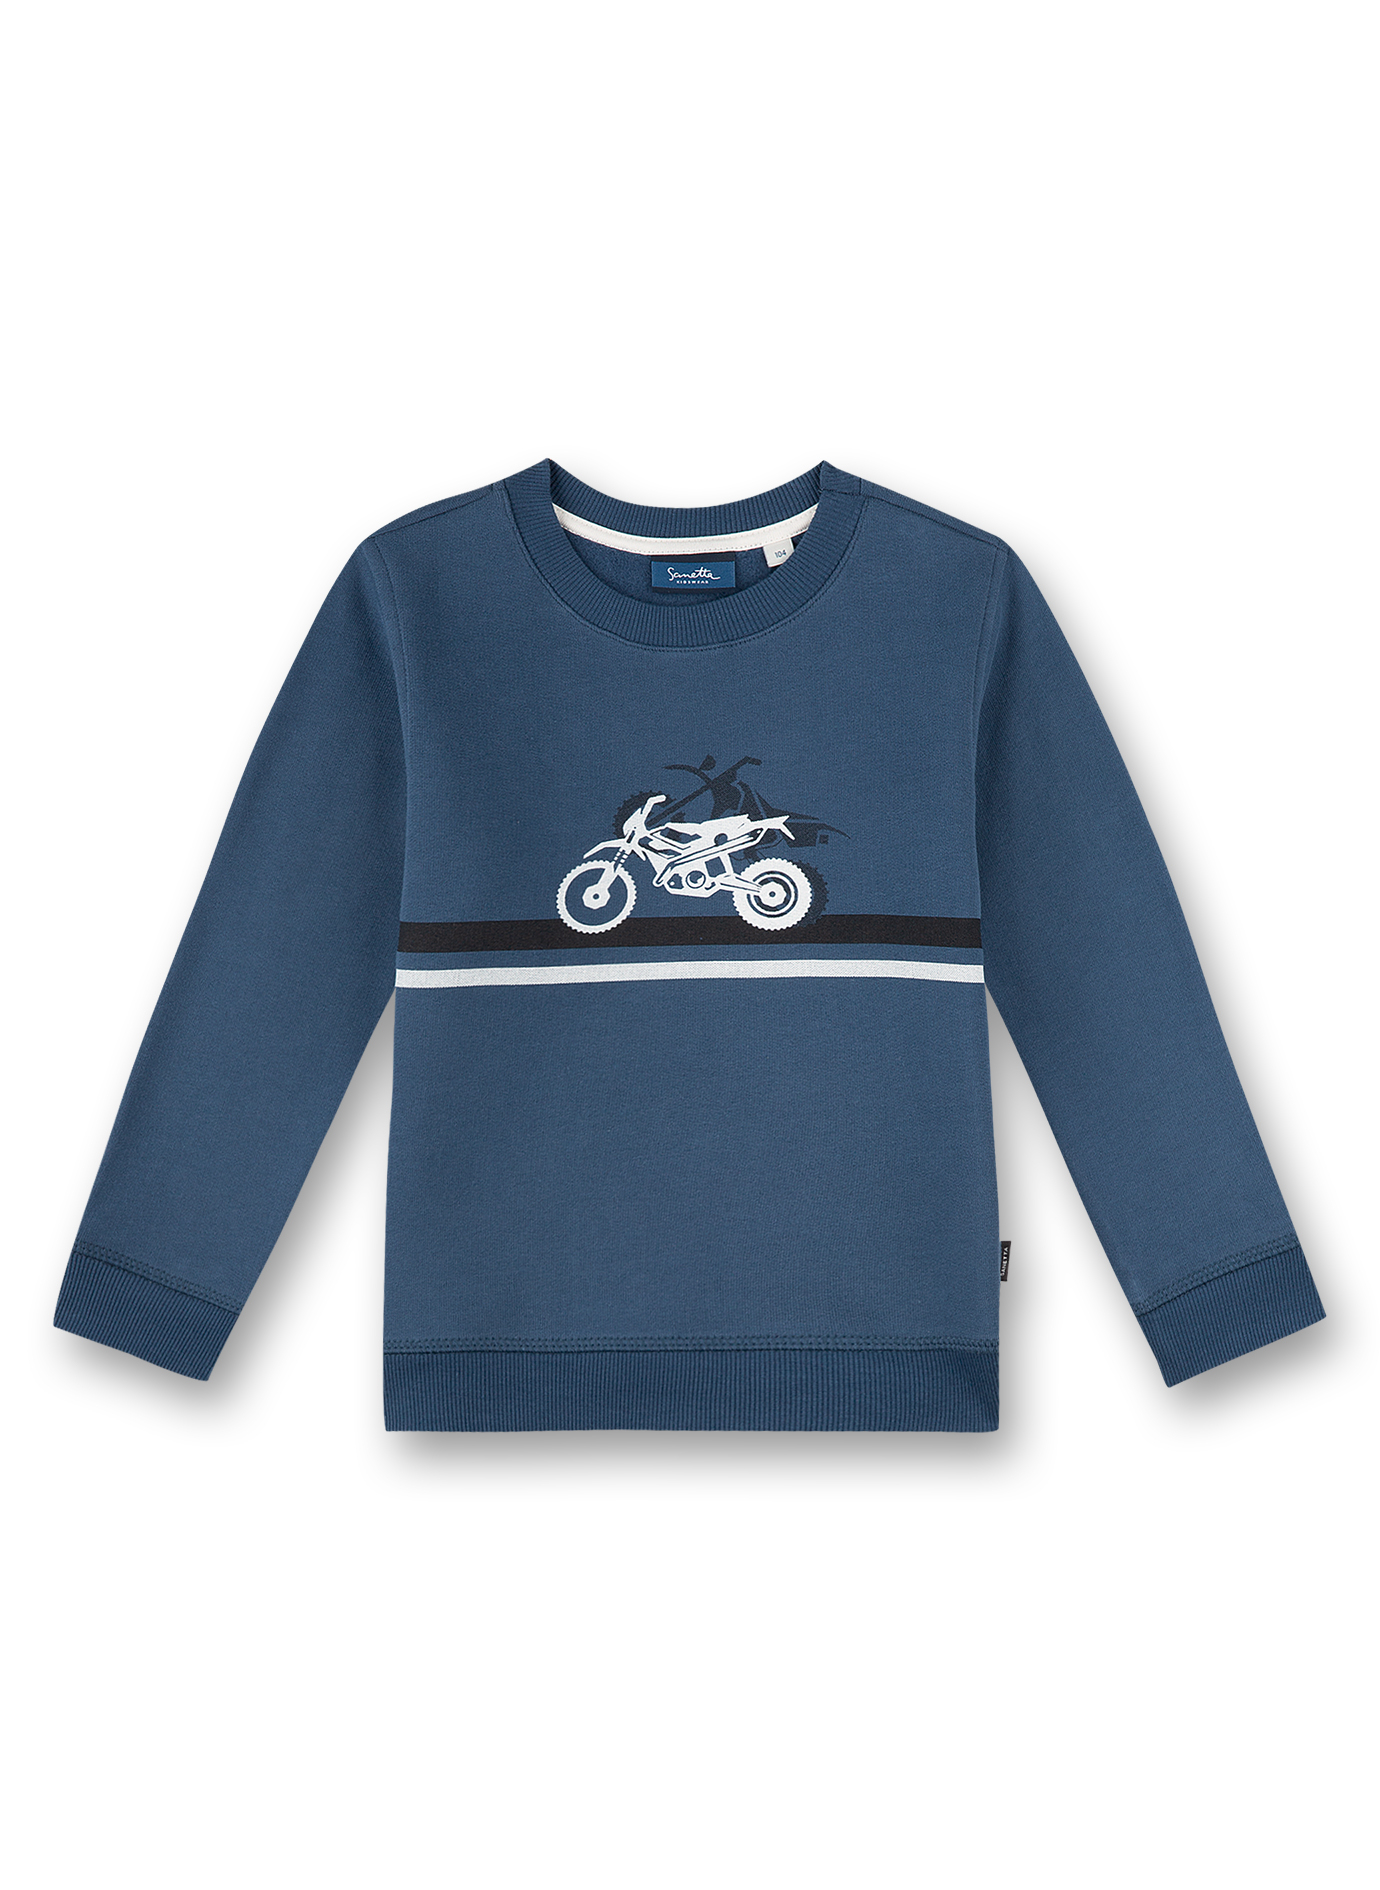 Jungen-Sweatshirt Blau Motocross